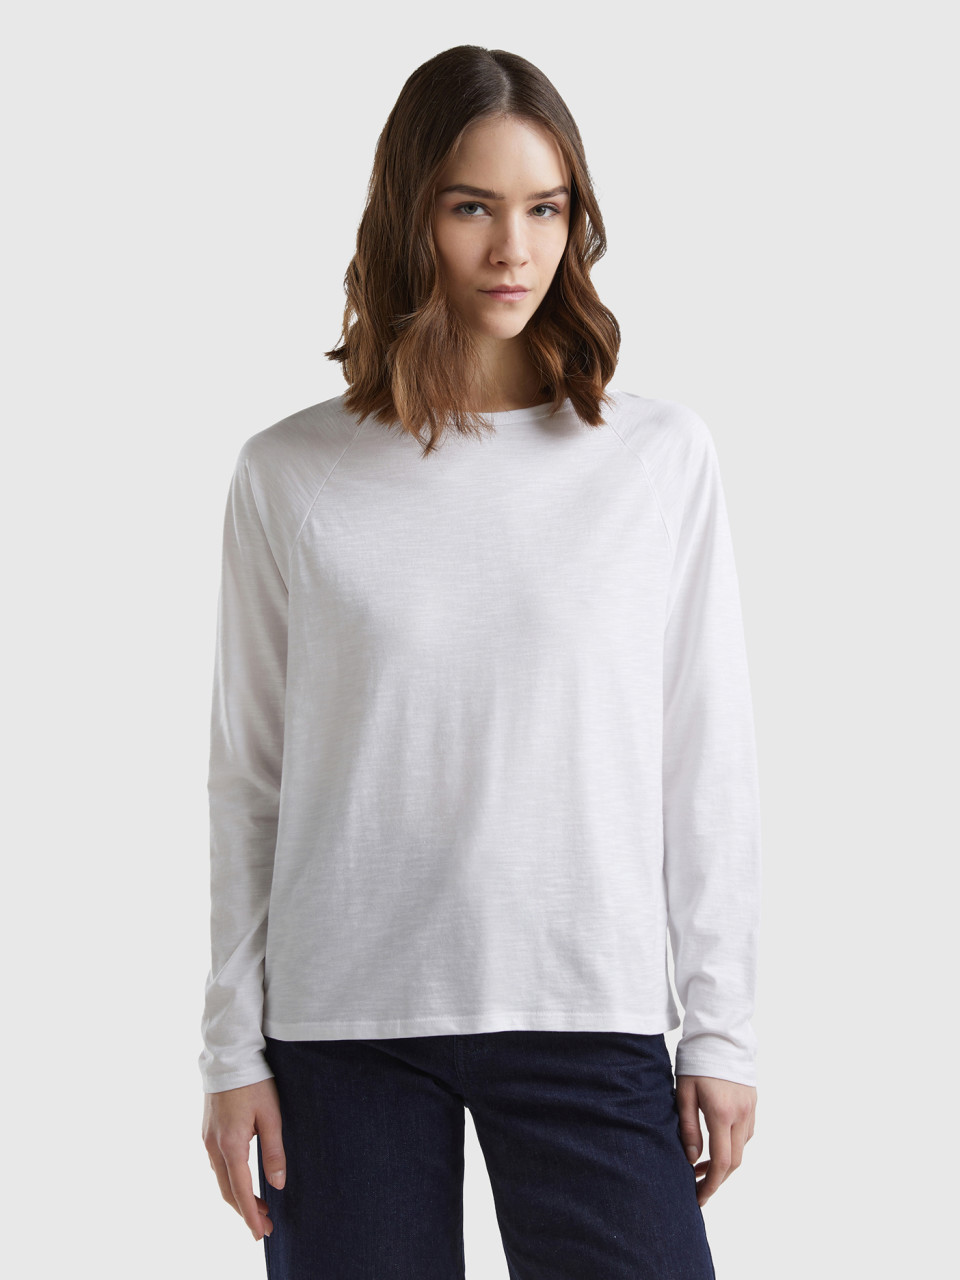 Benetton, Long Sleeve T-shirt In Light Cotton, White, Women